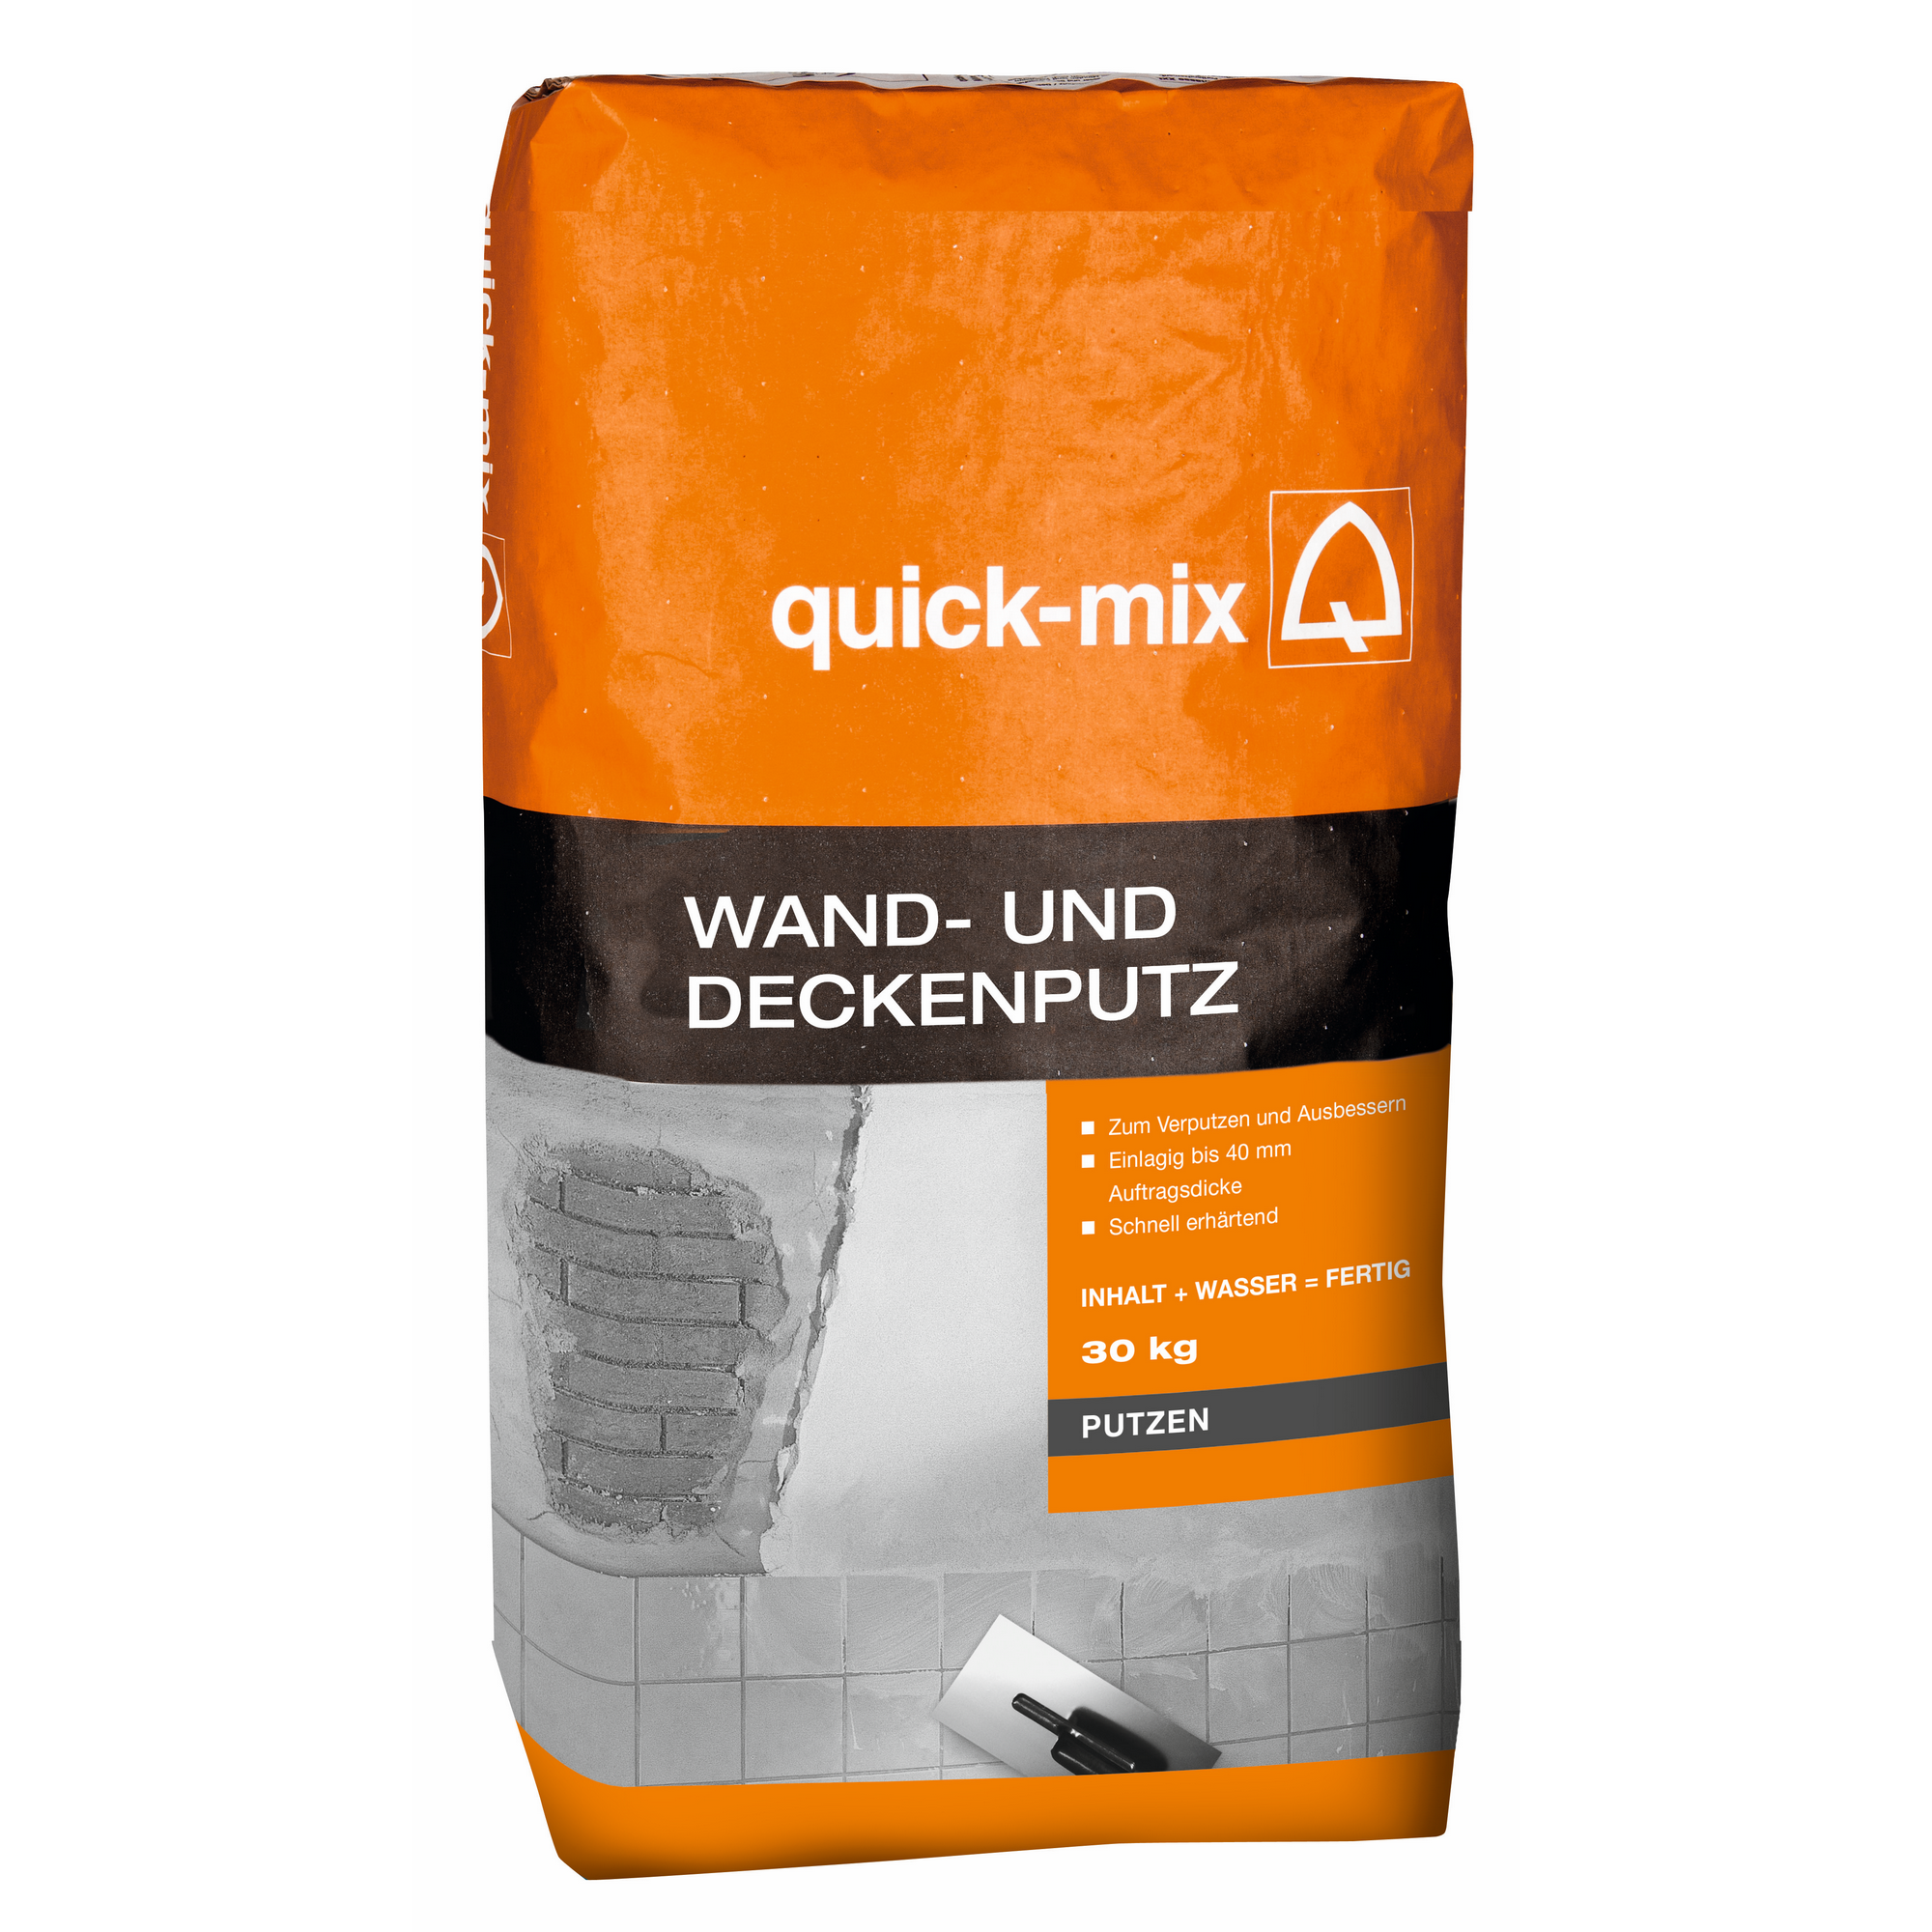 Wand- und Deckenputz 30 kg + product picture